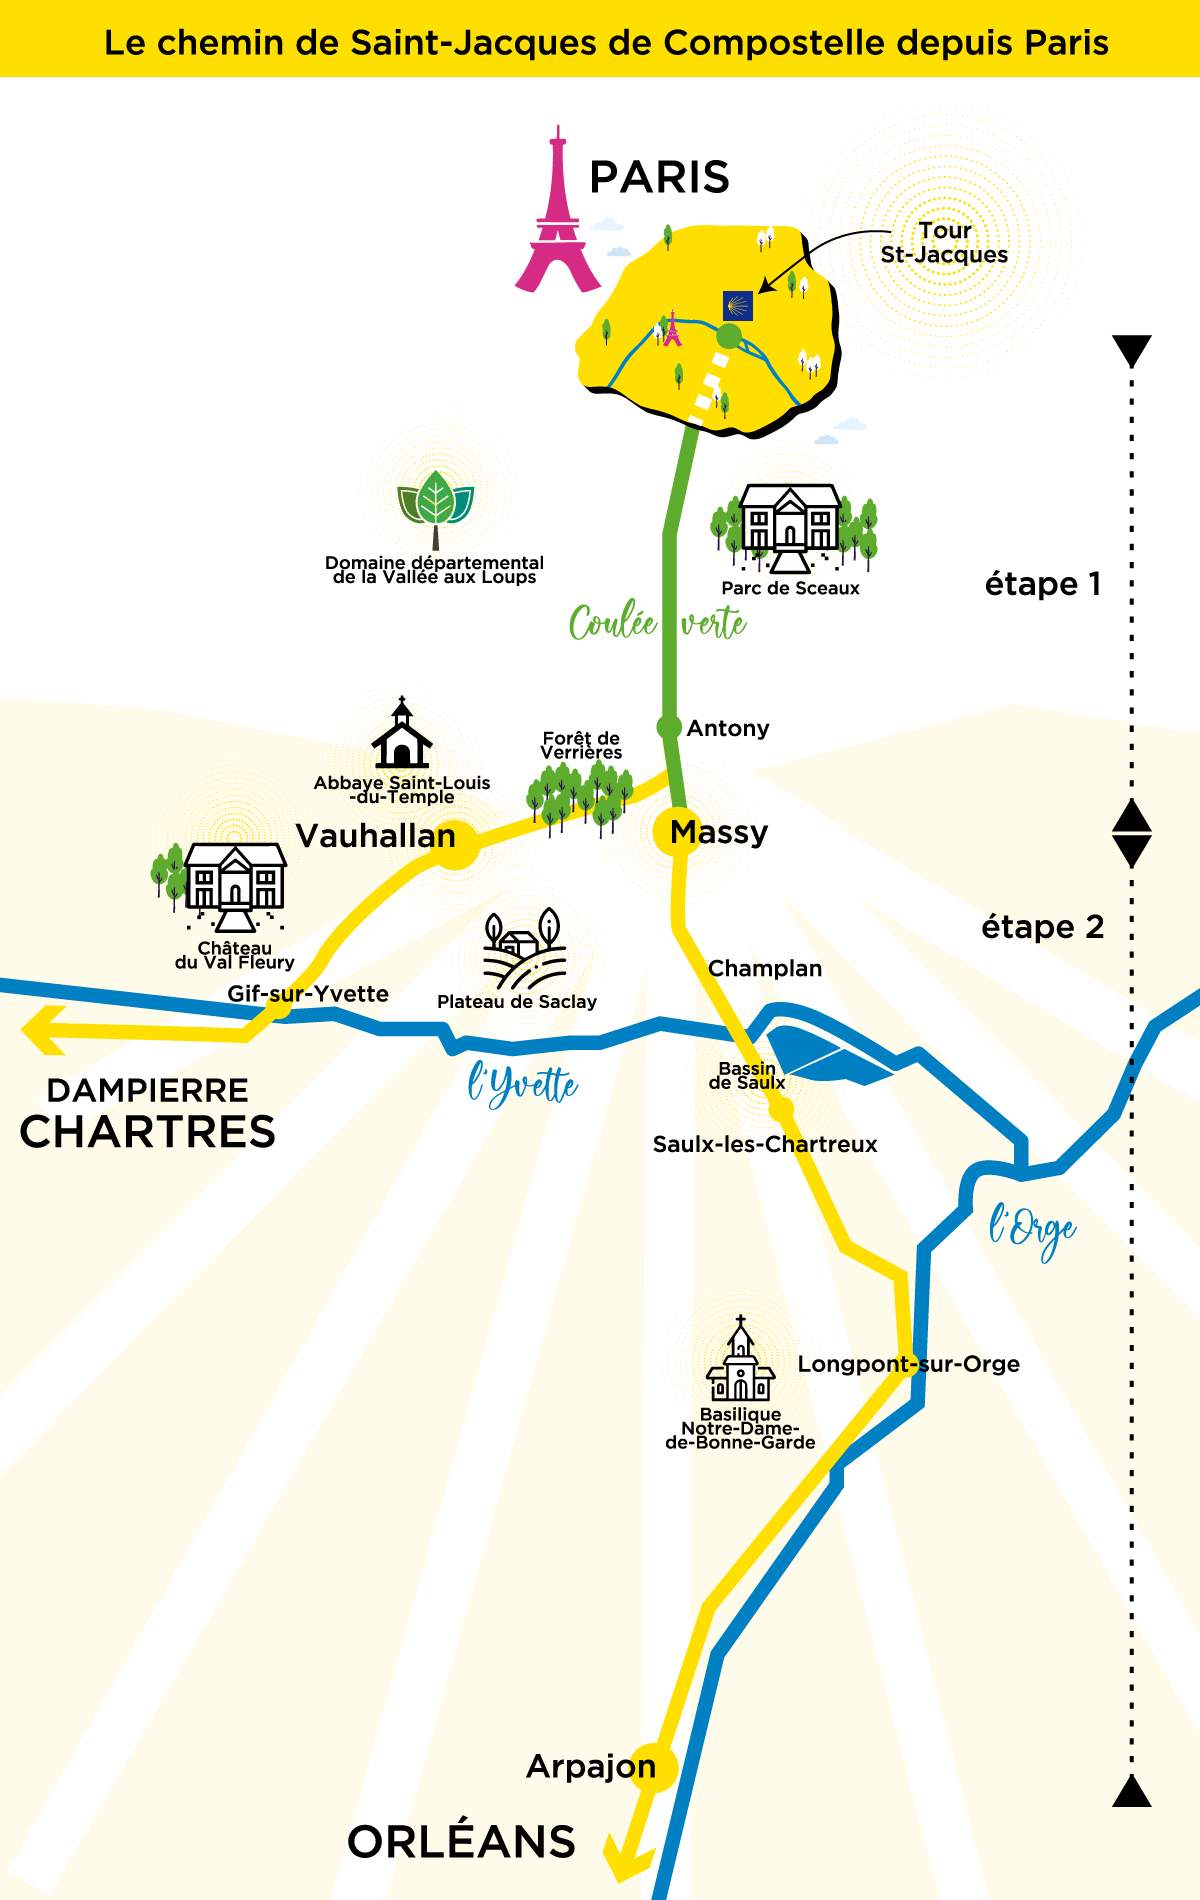 Saint-Jacques de Compostelle map - Sophie Pardo